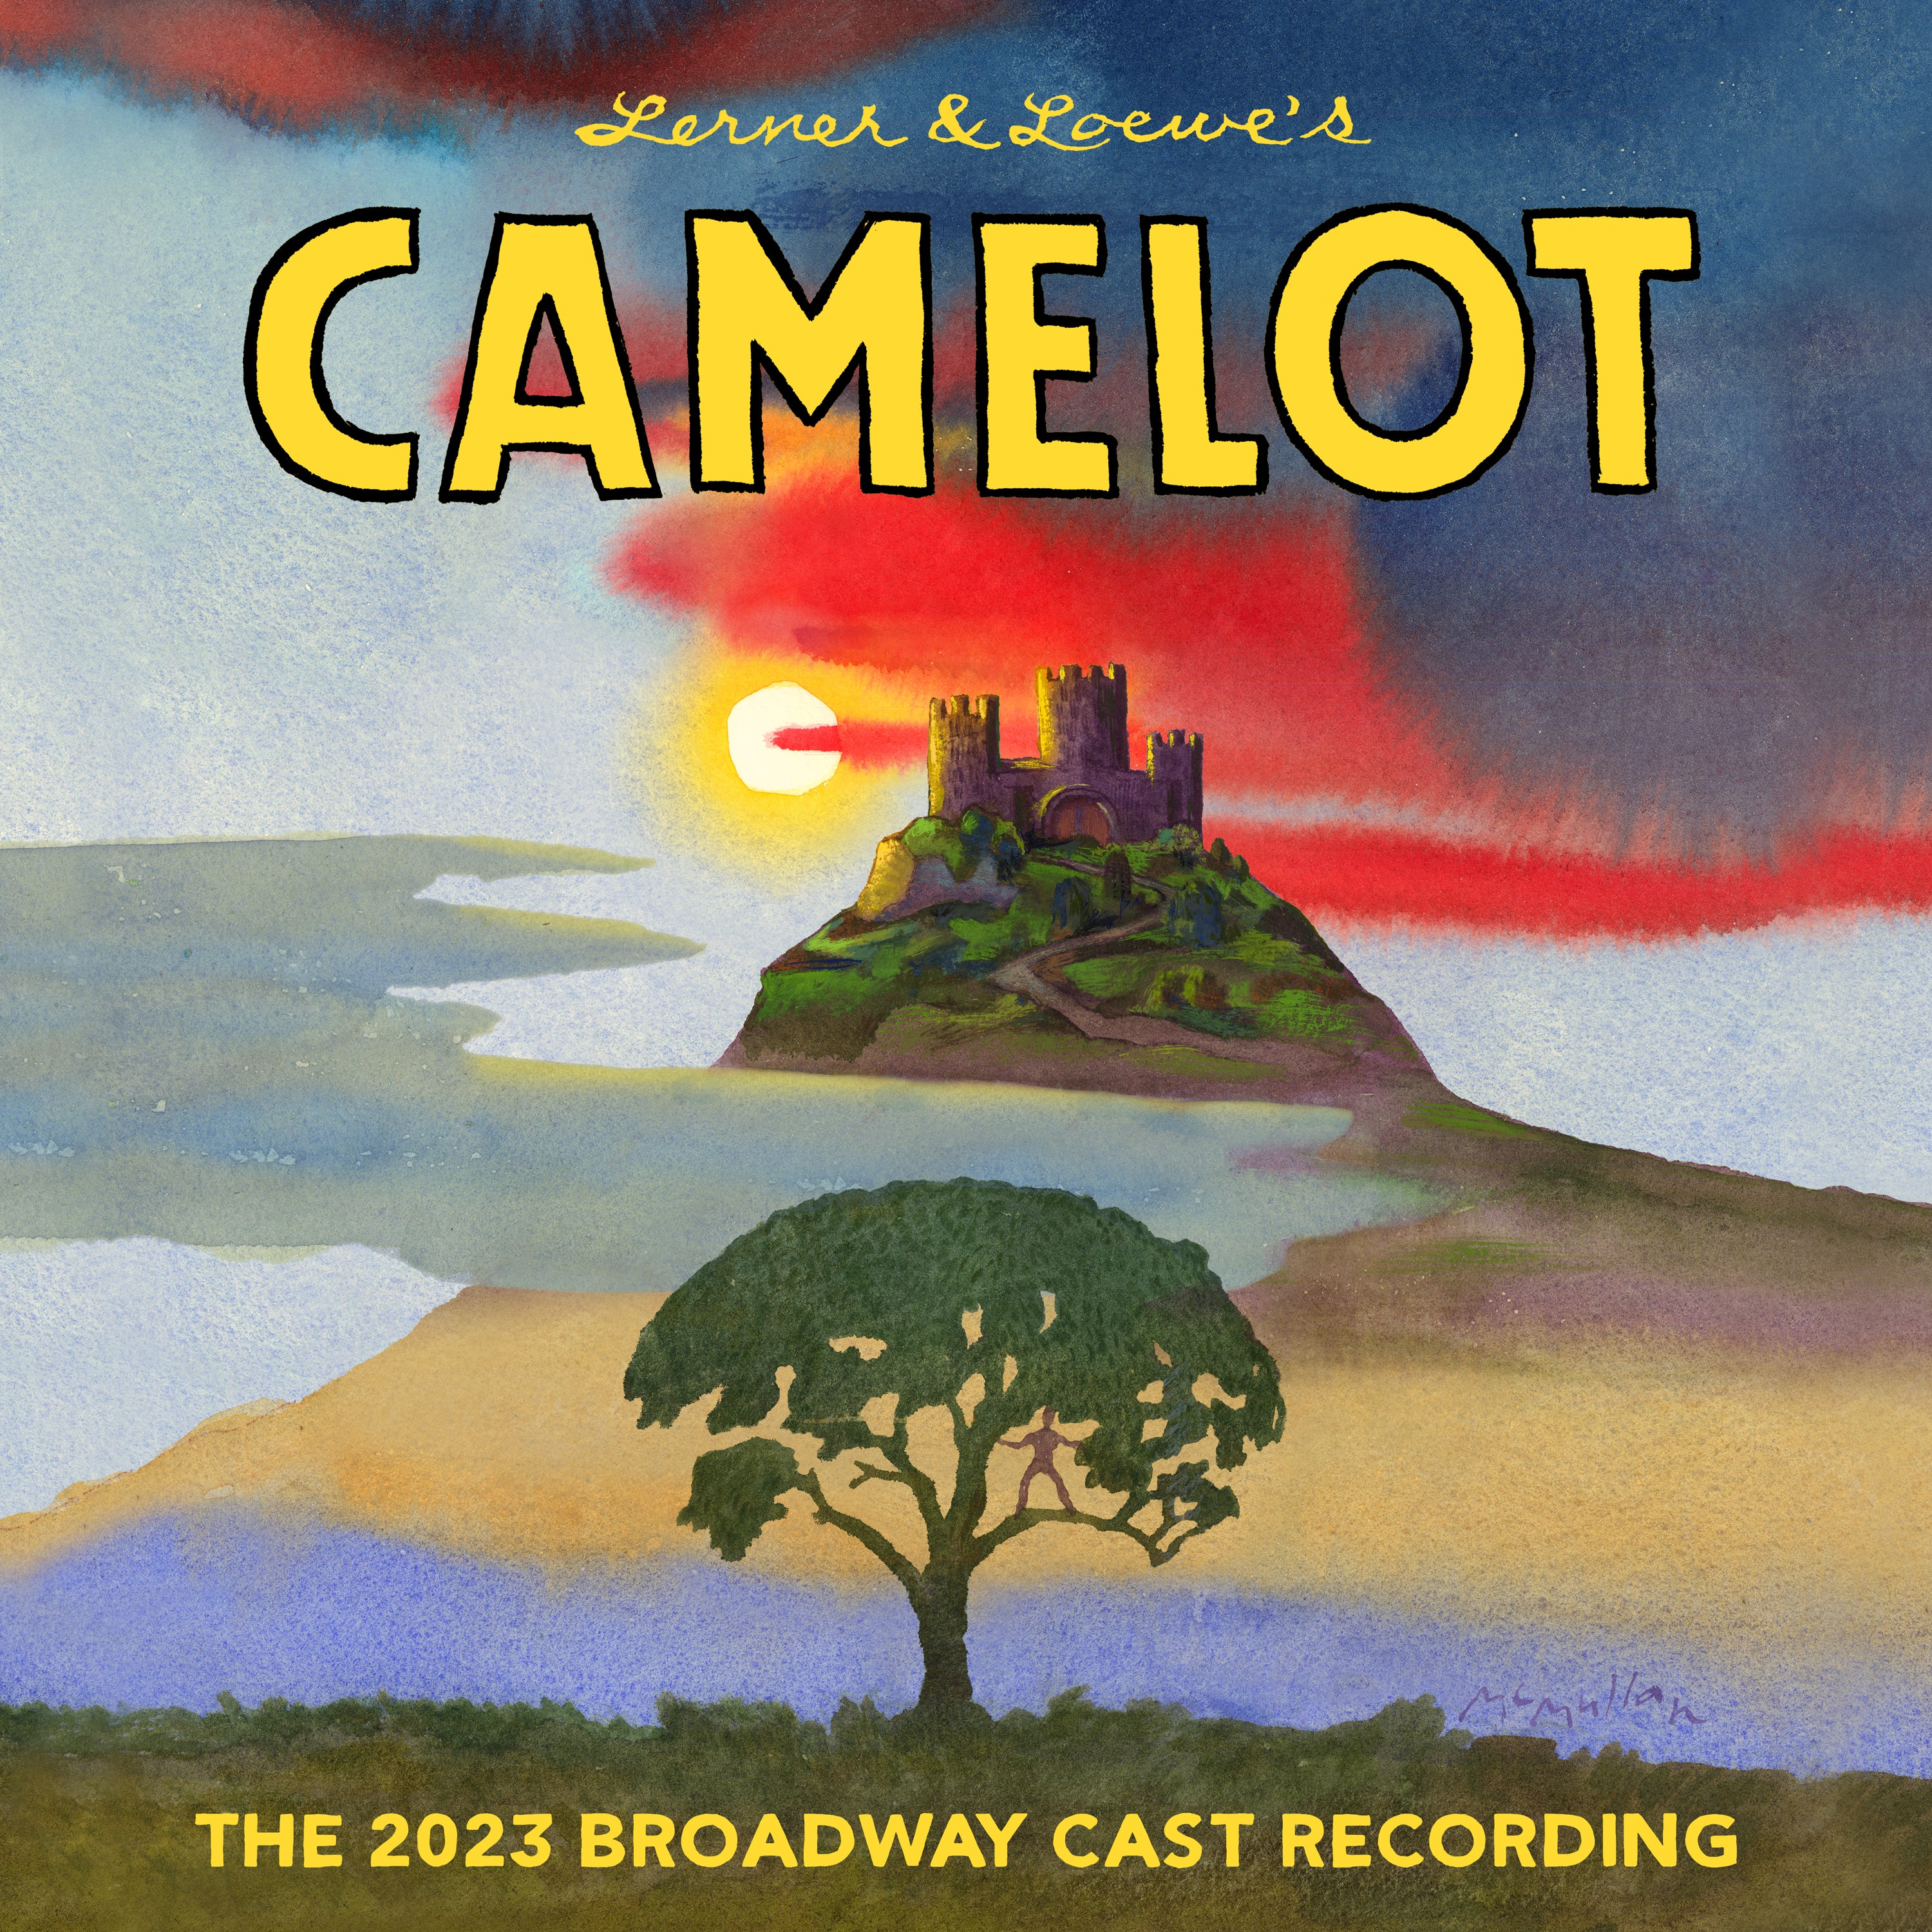 CAMELOT 2023 Broadway Cast Recording Thread